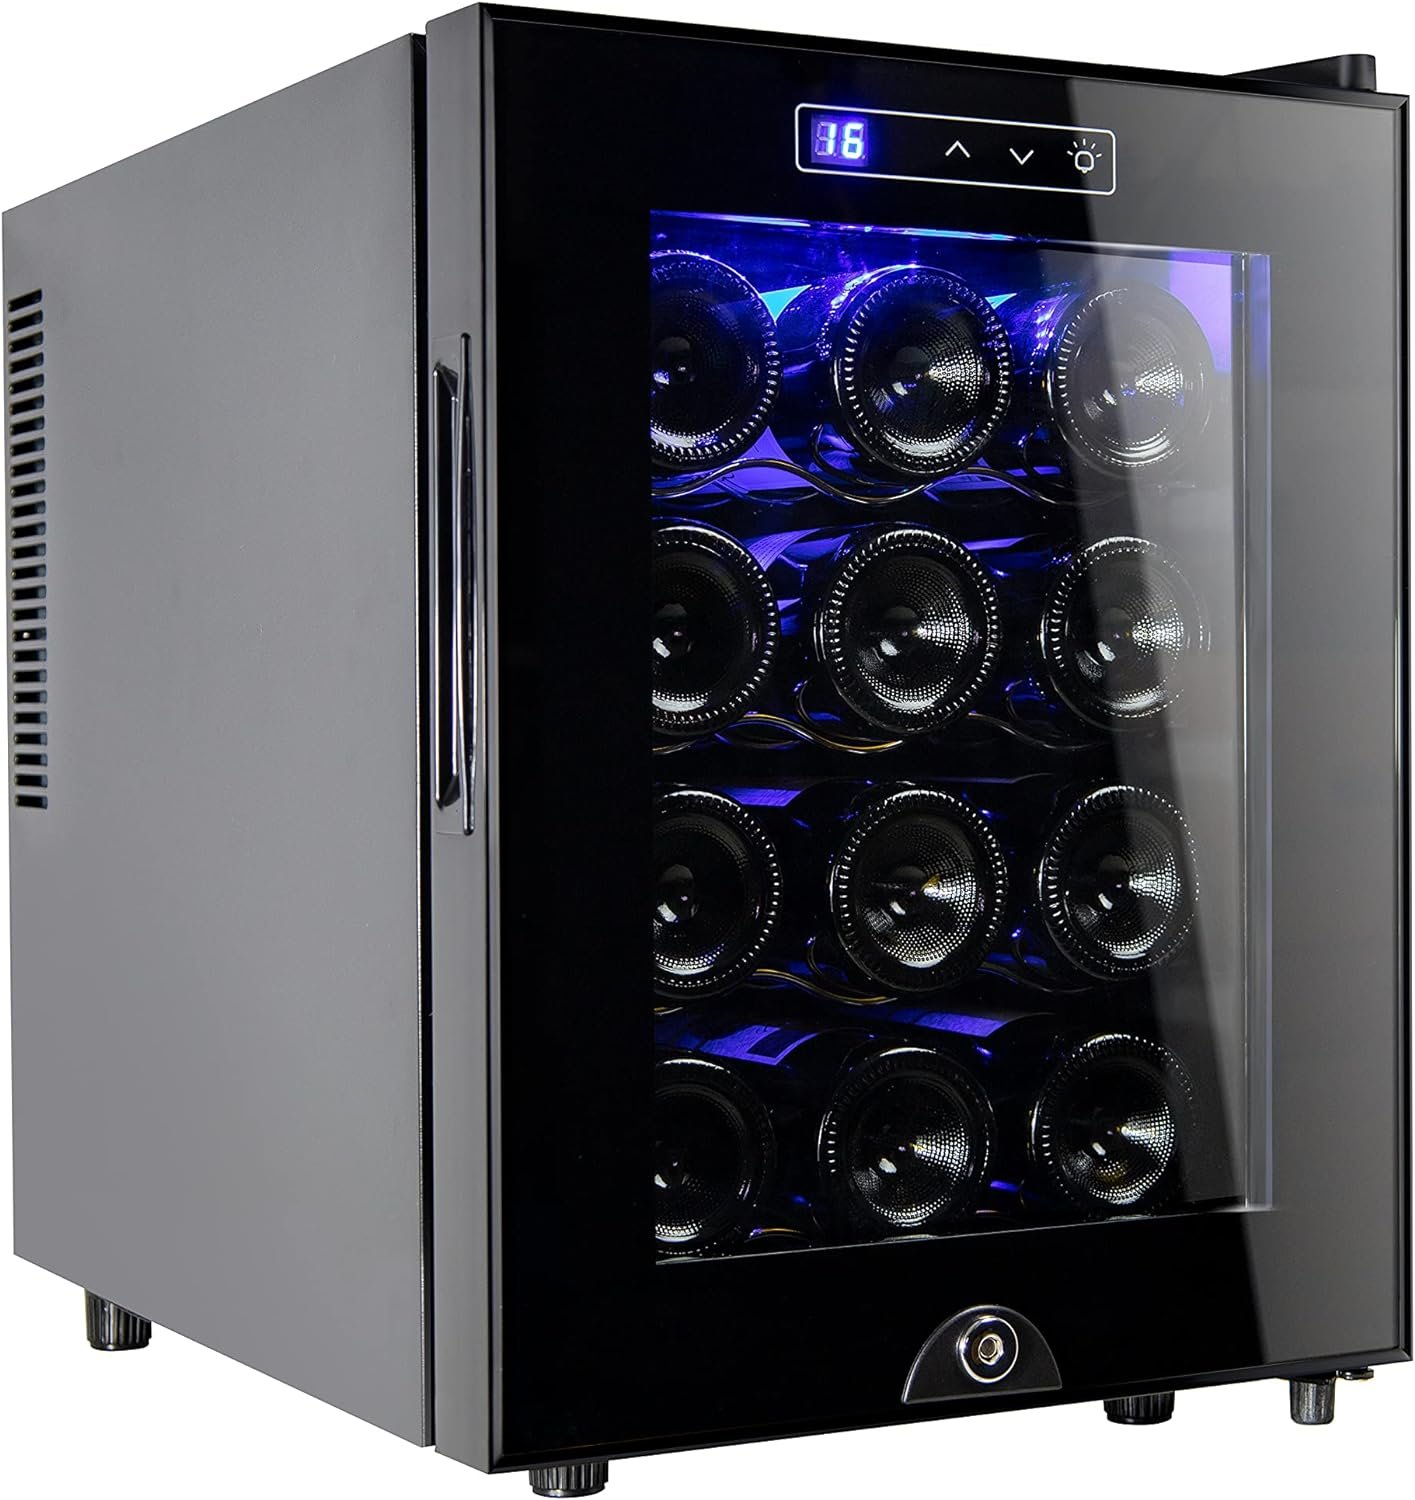 Miladred 12 Bottle Wine Cooler Refrigerator